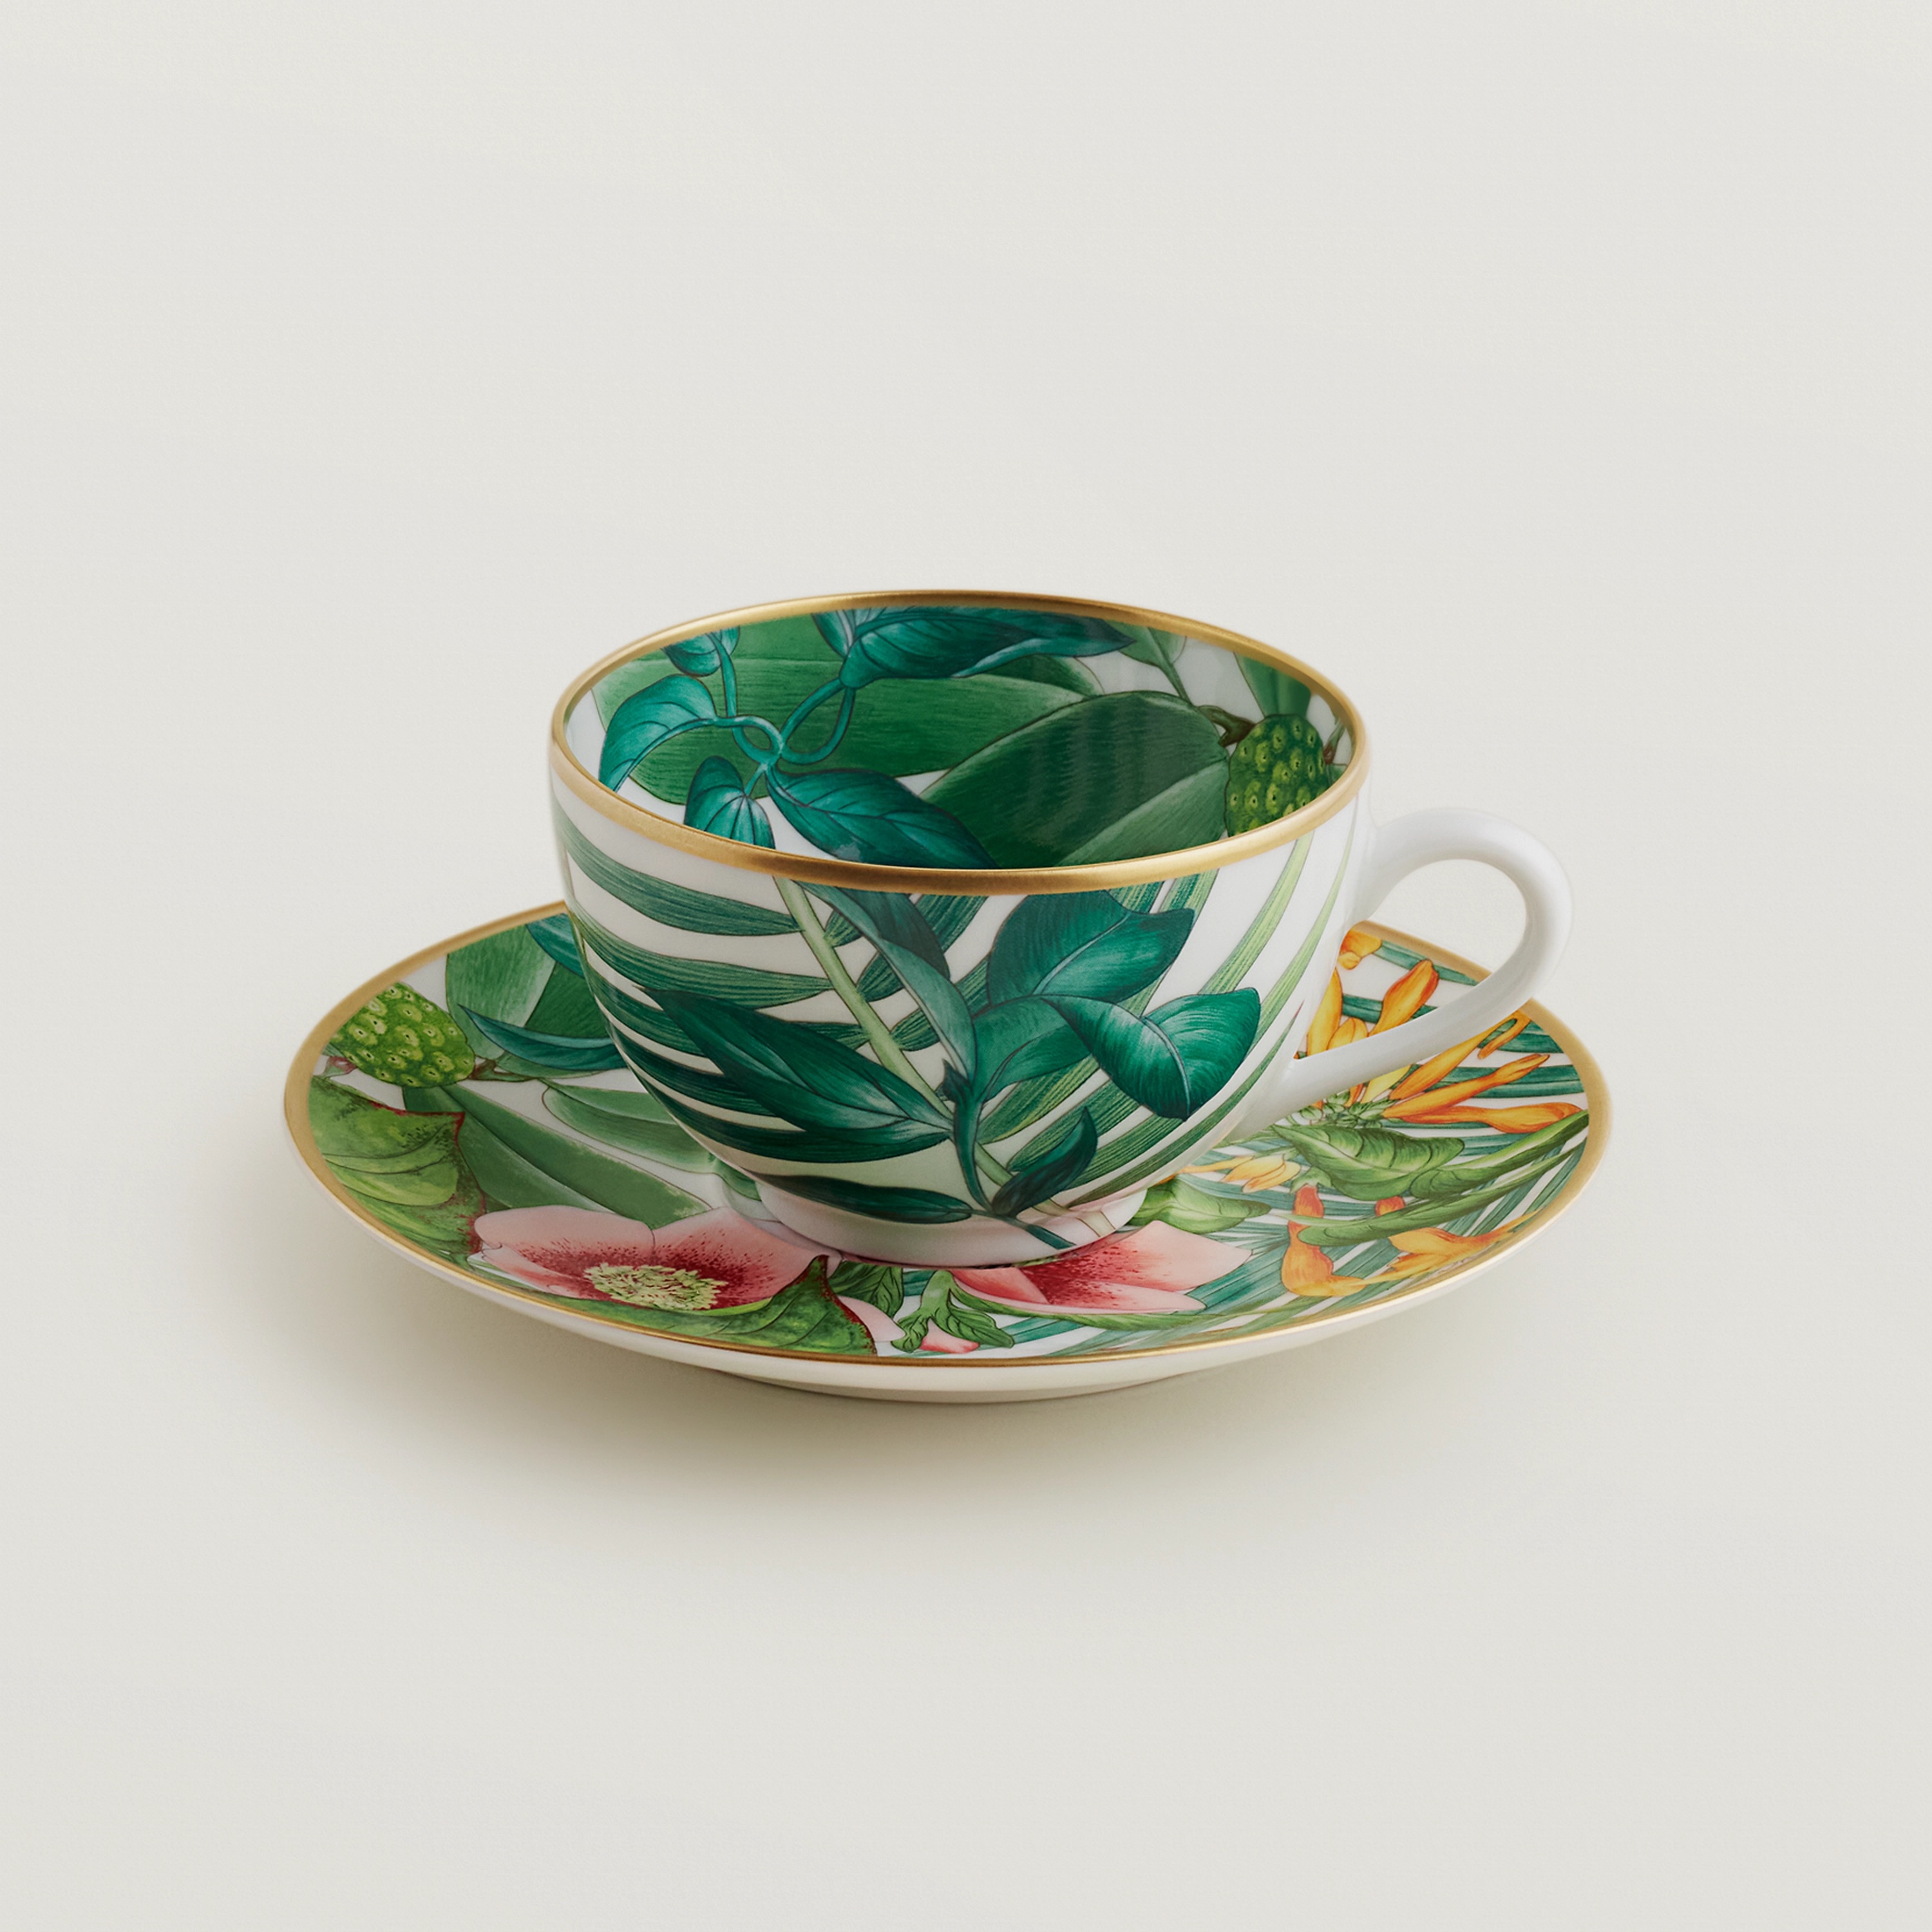 Passifolia Tea Cup and Saucer in porcelain, capacity 6.7 fl. oz., $475. Photo via Hermès.com.